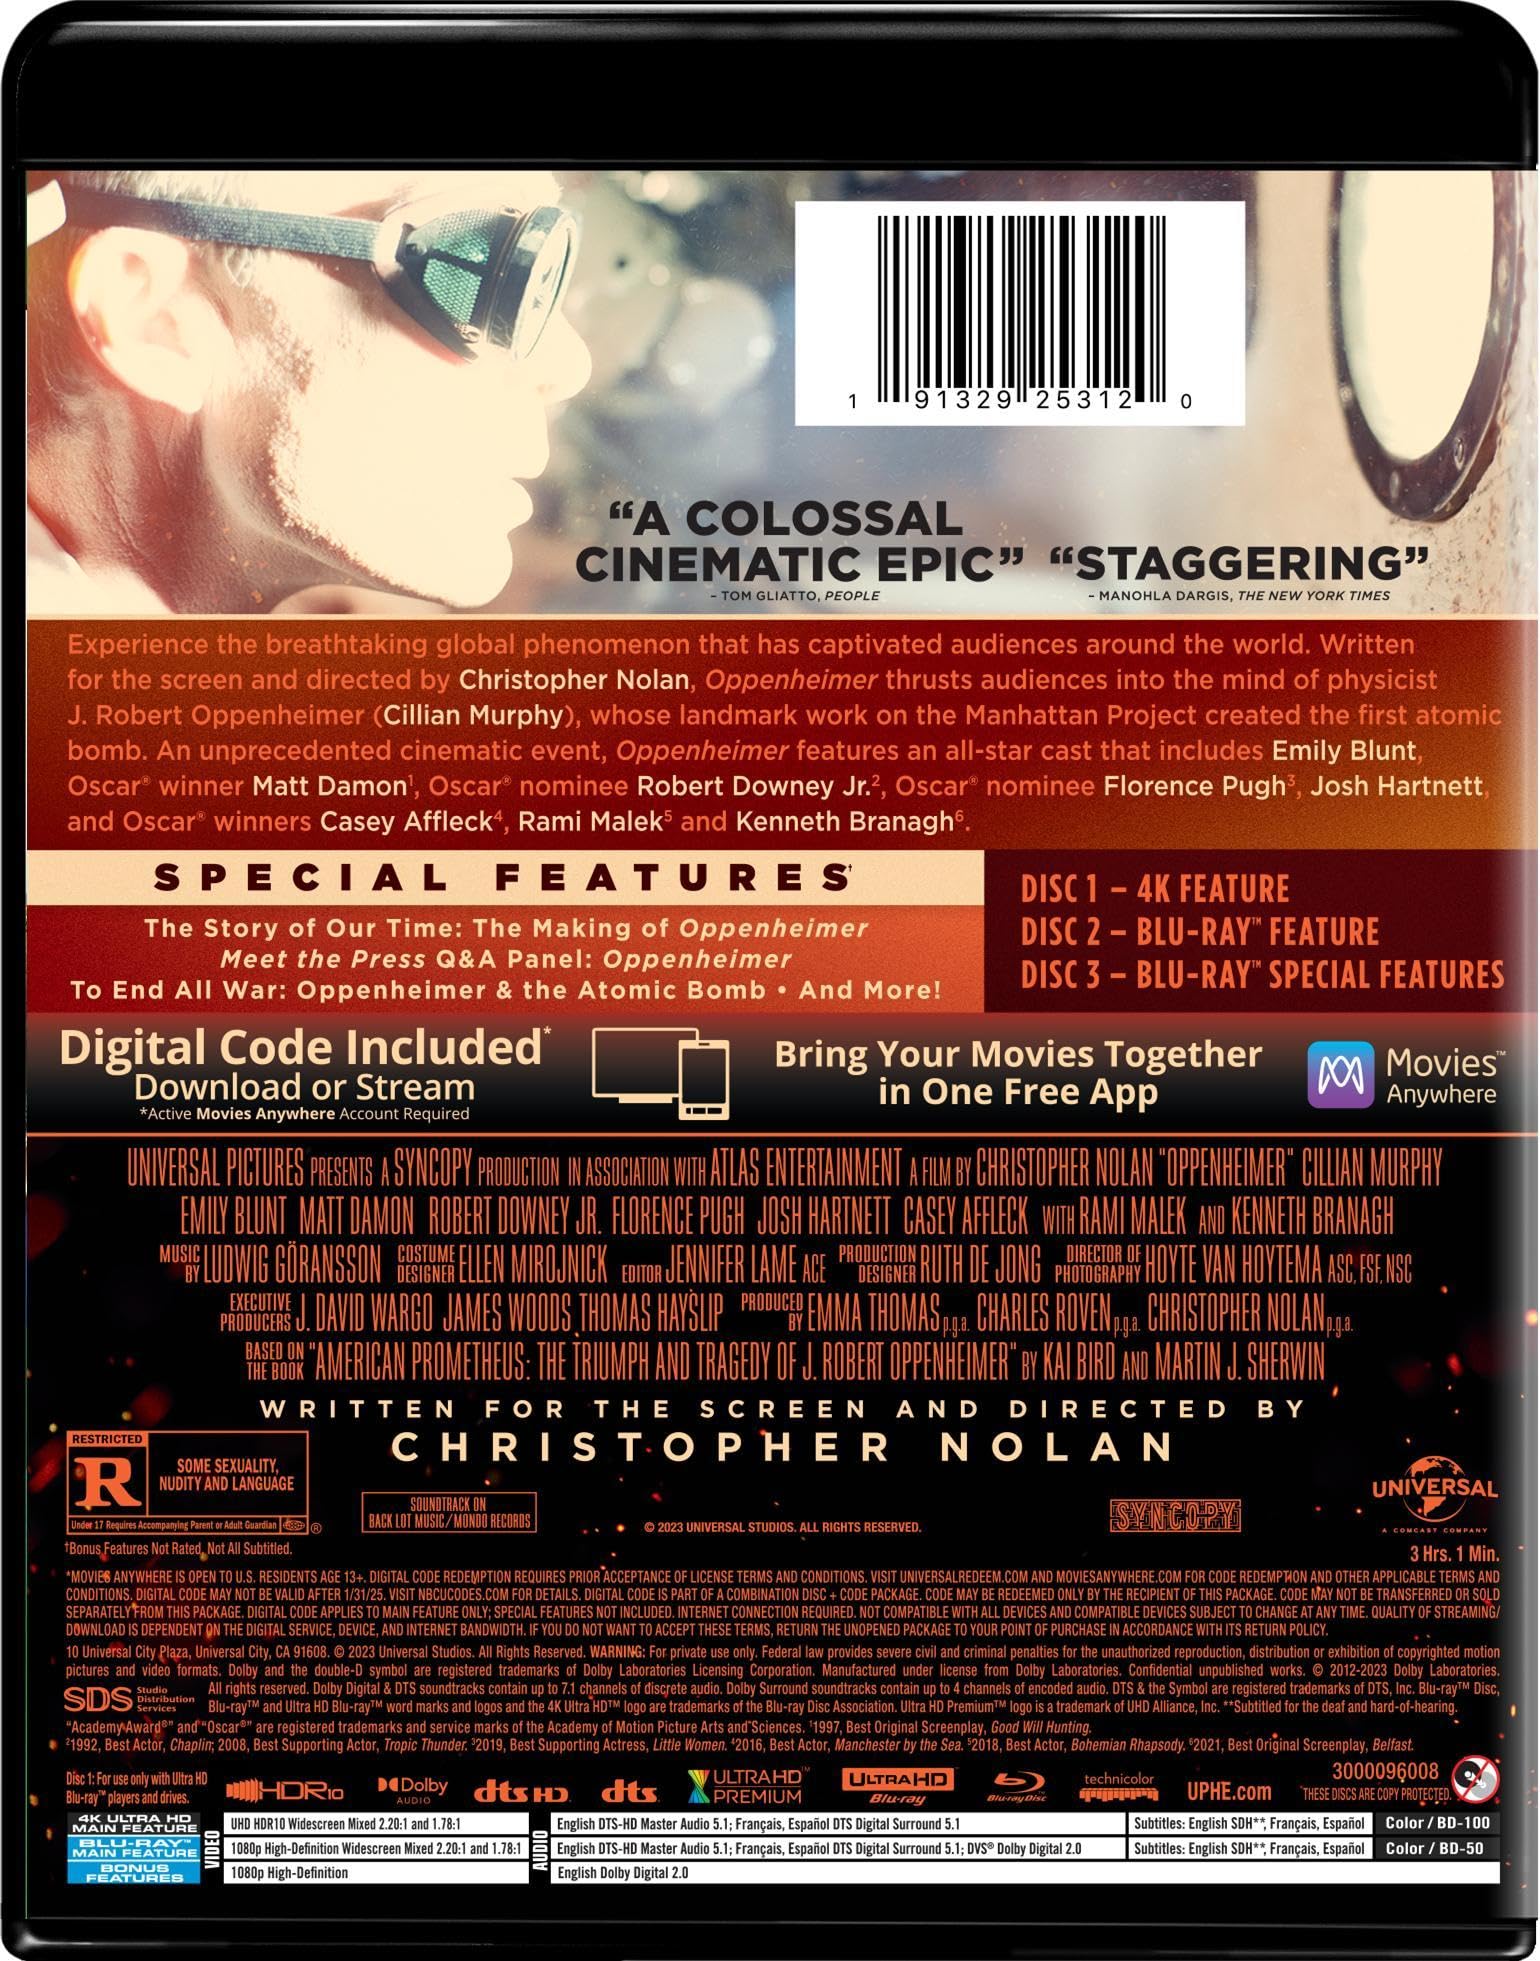 Oppenheimer (4K UHD + Blu-ray + Digital)